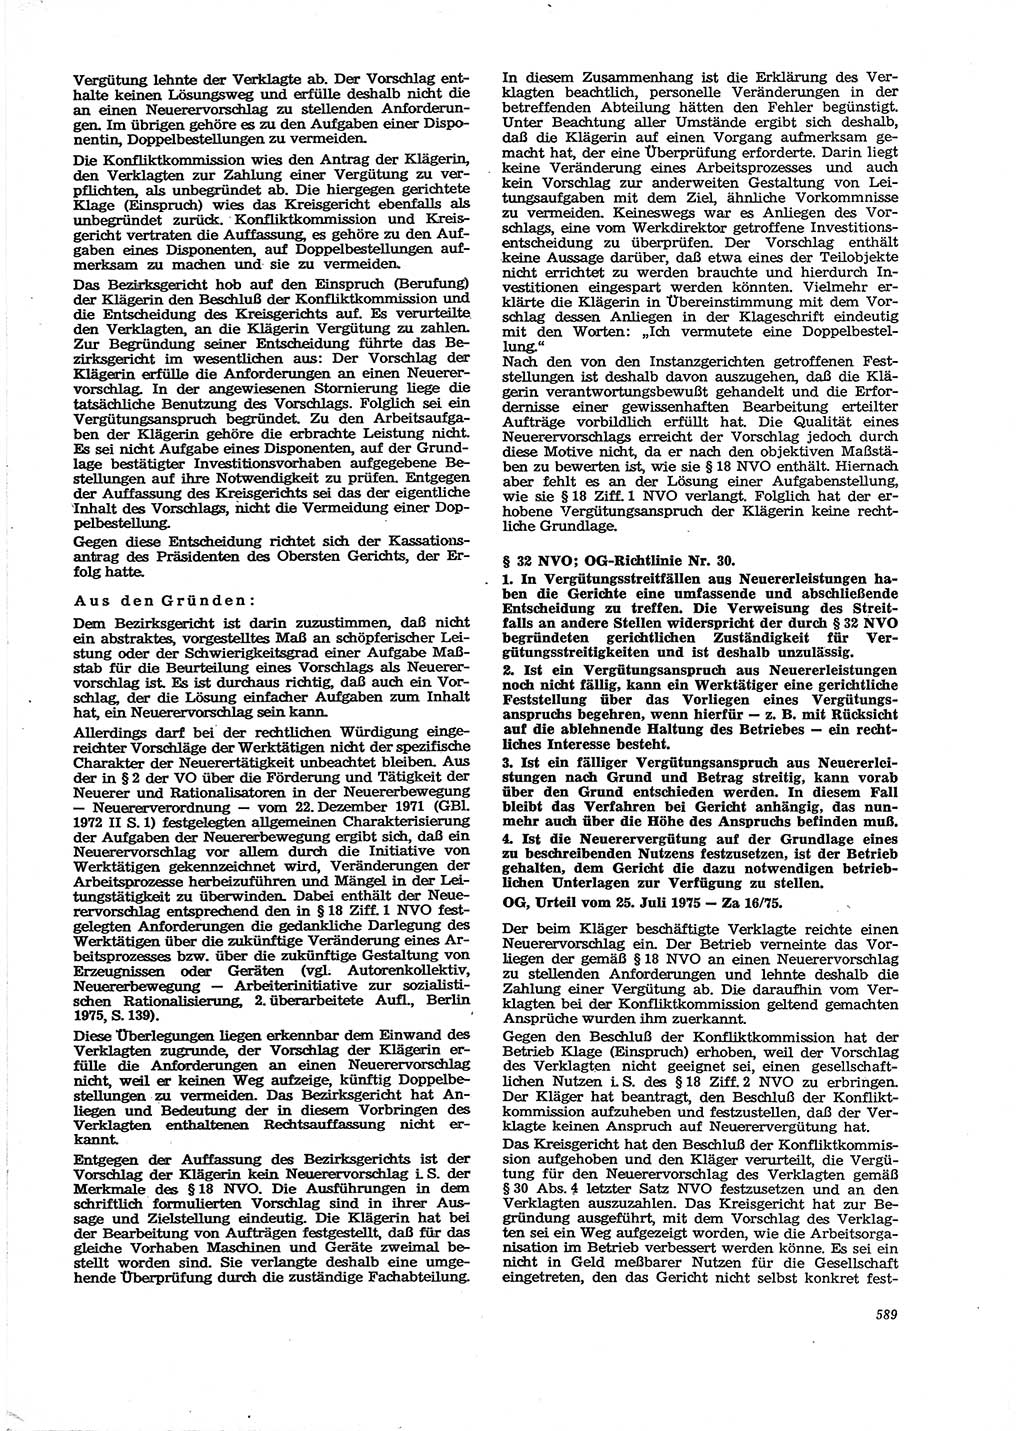 Neue Justiz (NJ), Zeitschrift für Recht und Rechtswissenschaft [Deutsche Demokratische Republik (DDR)], 29. Jahrgang 1975, Seite 589 (NJ DDR 1975, S. 589)